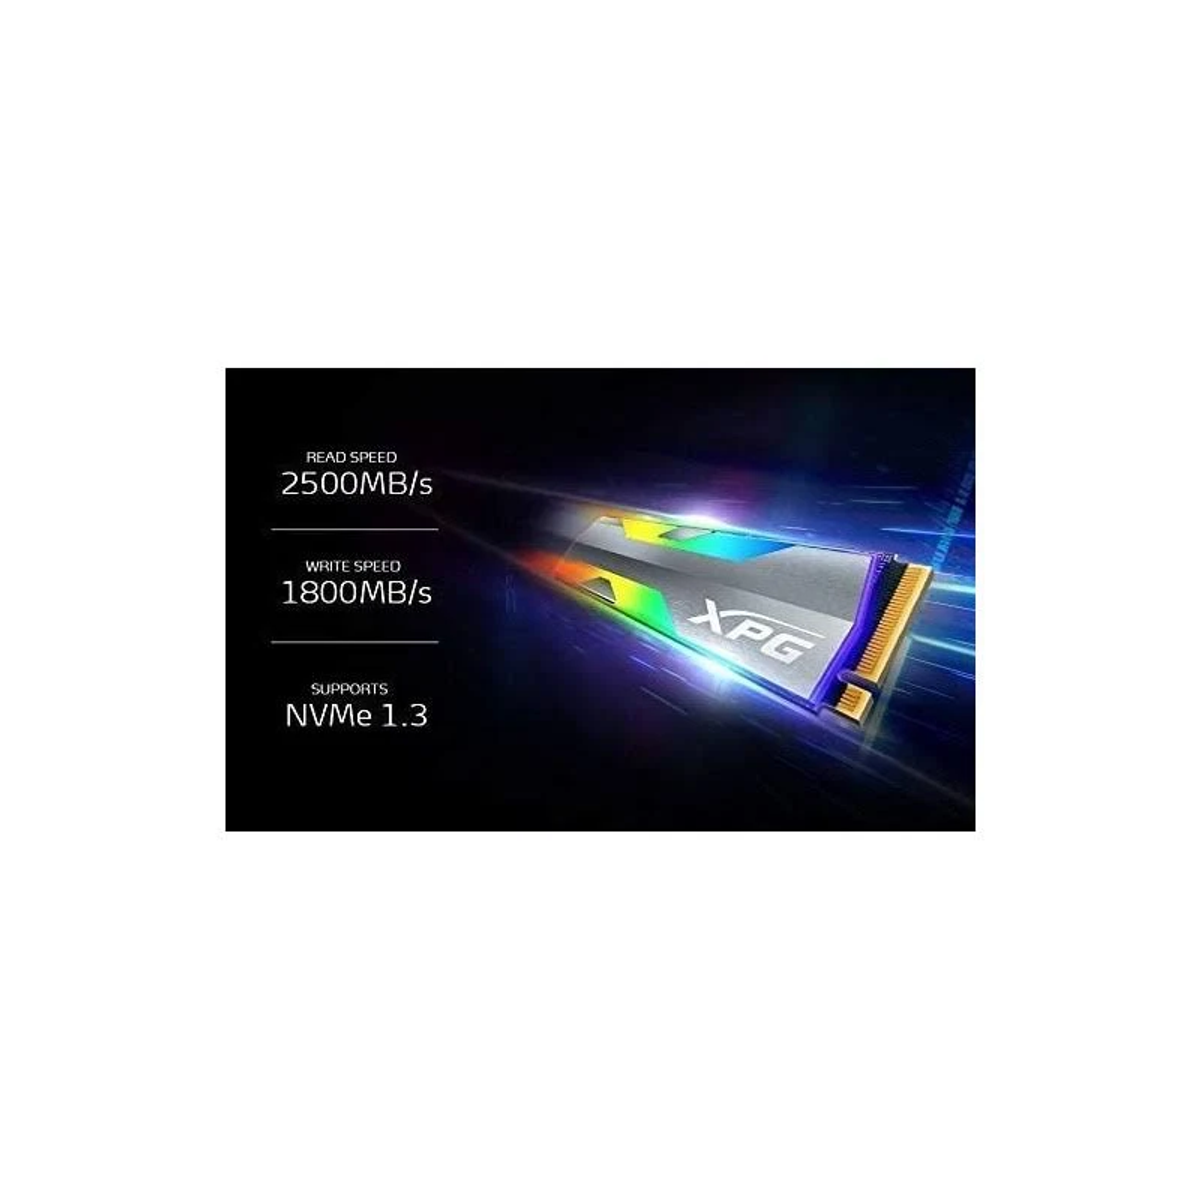 XPG ASPECTRIXS20G-500G-C, 500 intern HDD, SSD, GB